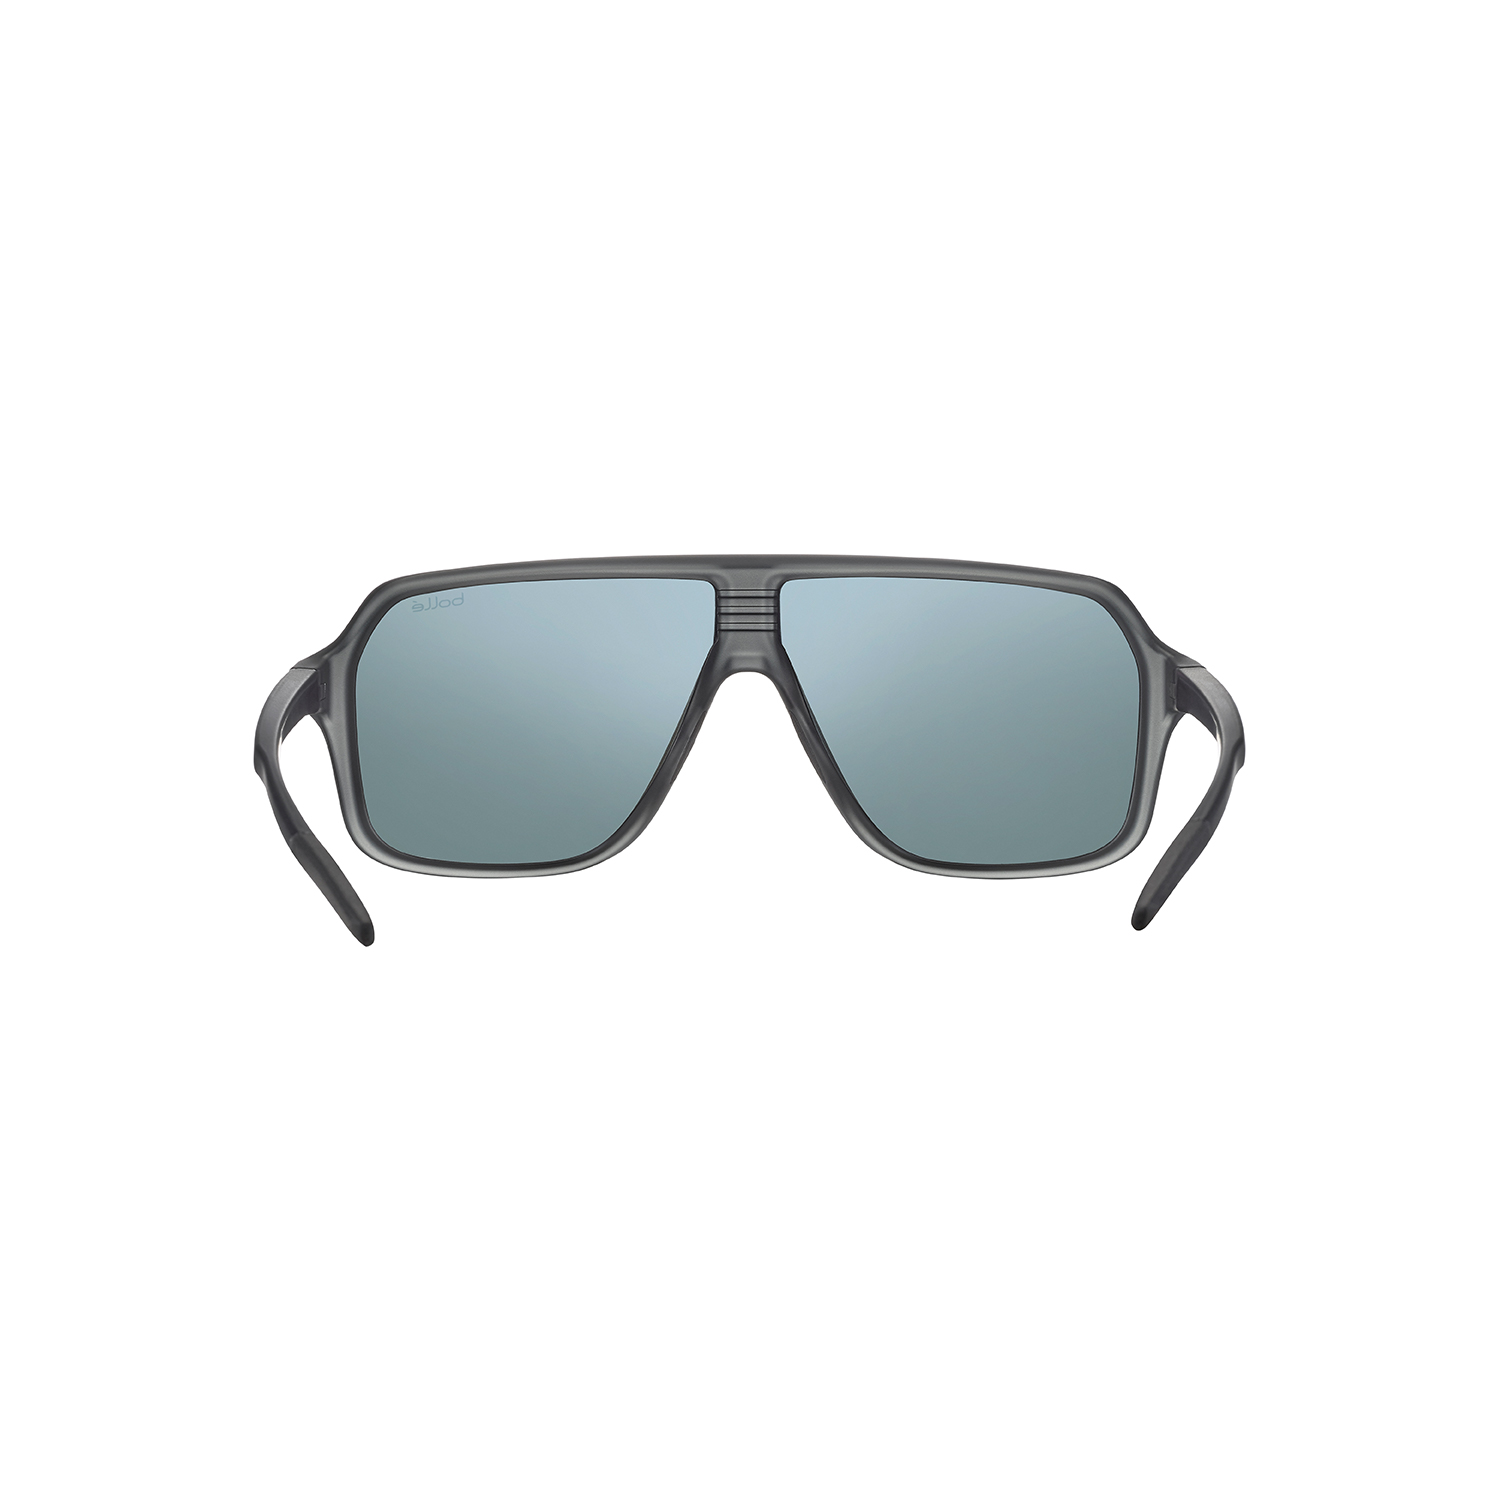 Gafas Bollé Prime negro translúcido con lentes polarizadas TNS